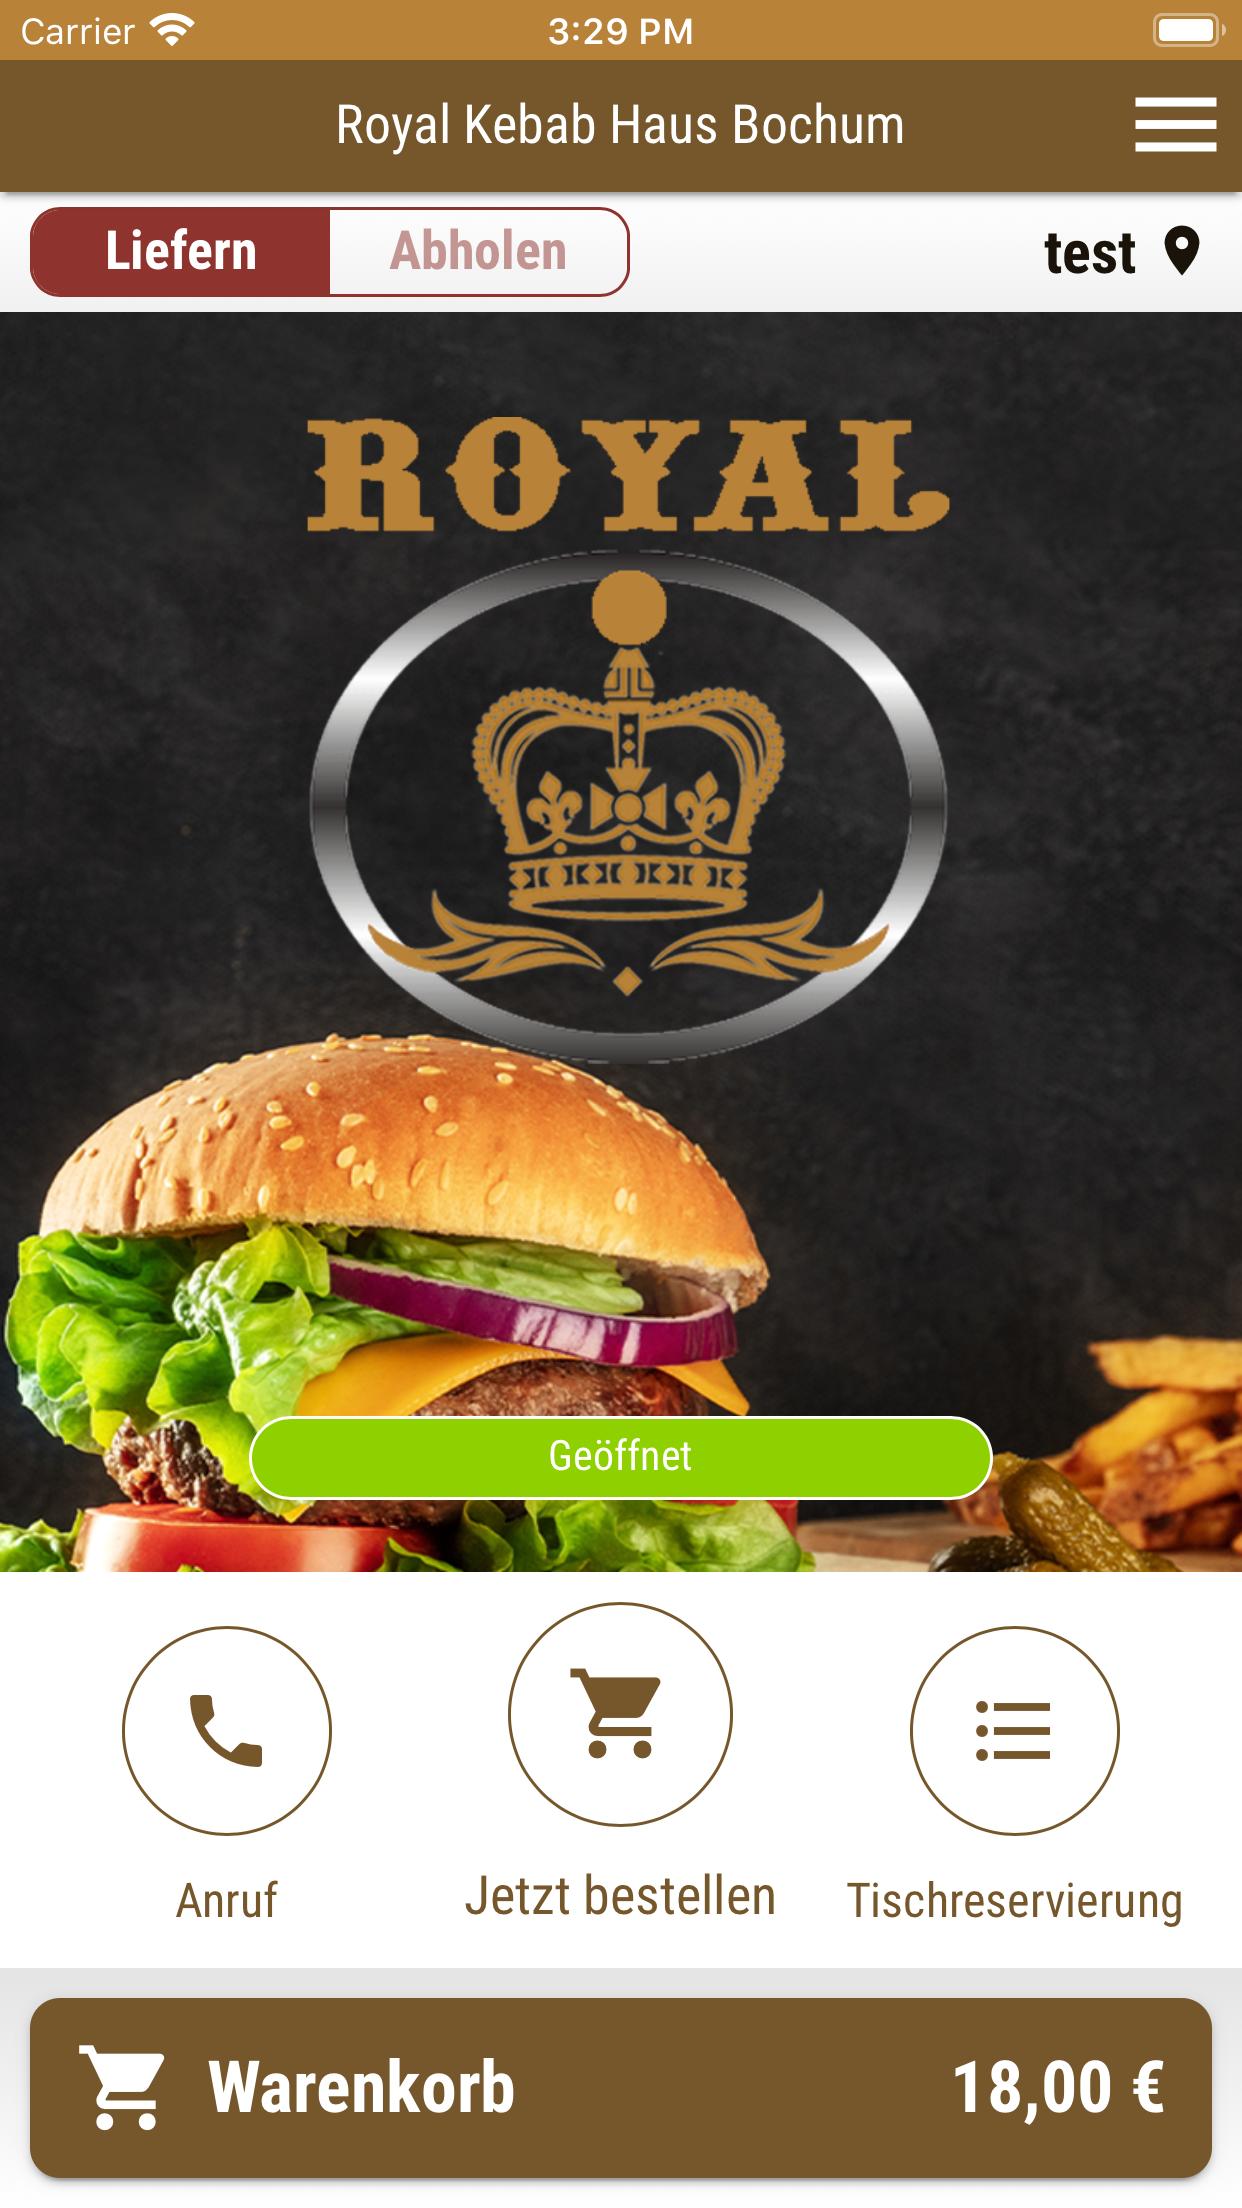 Royal Kebab Haus Bochum For Android Apk Download